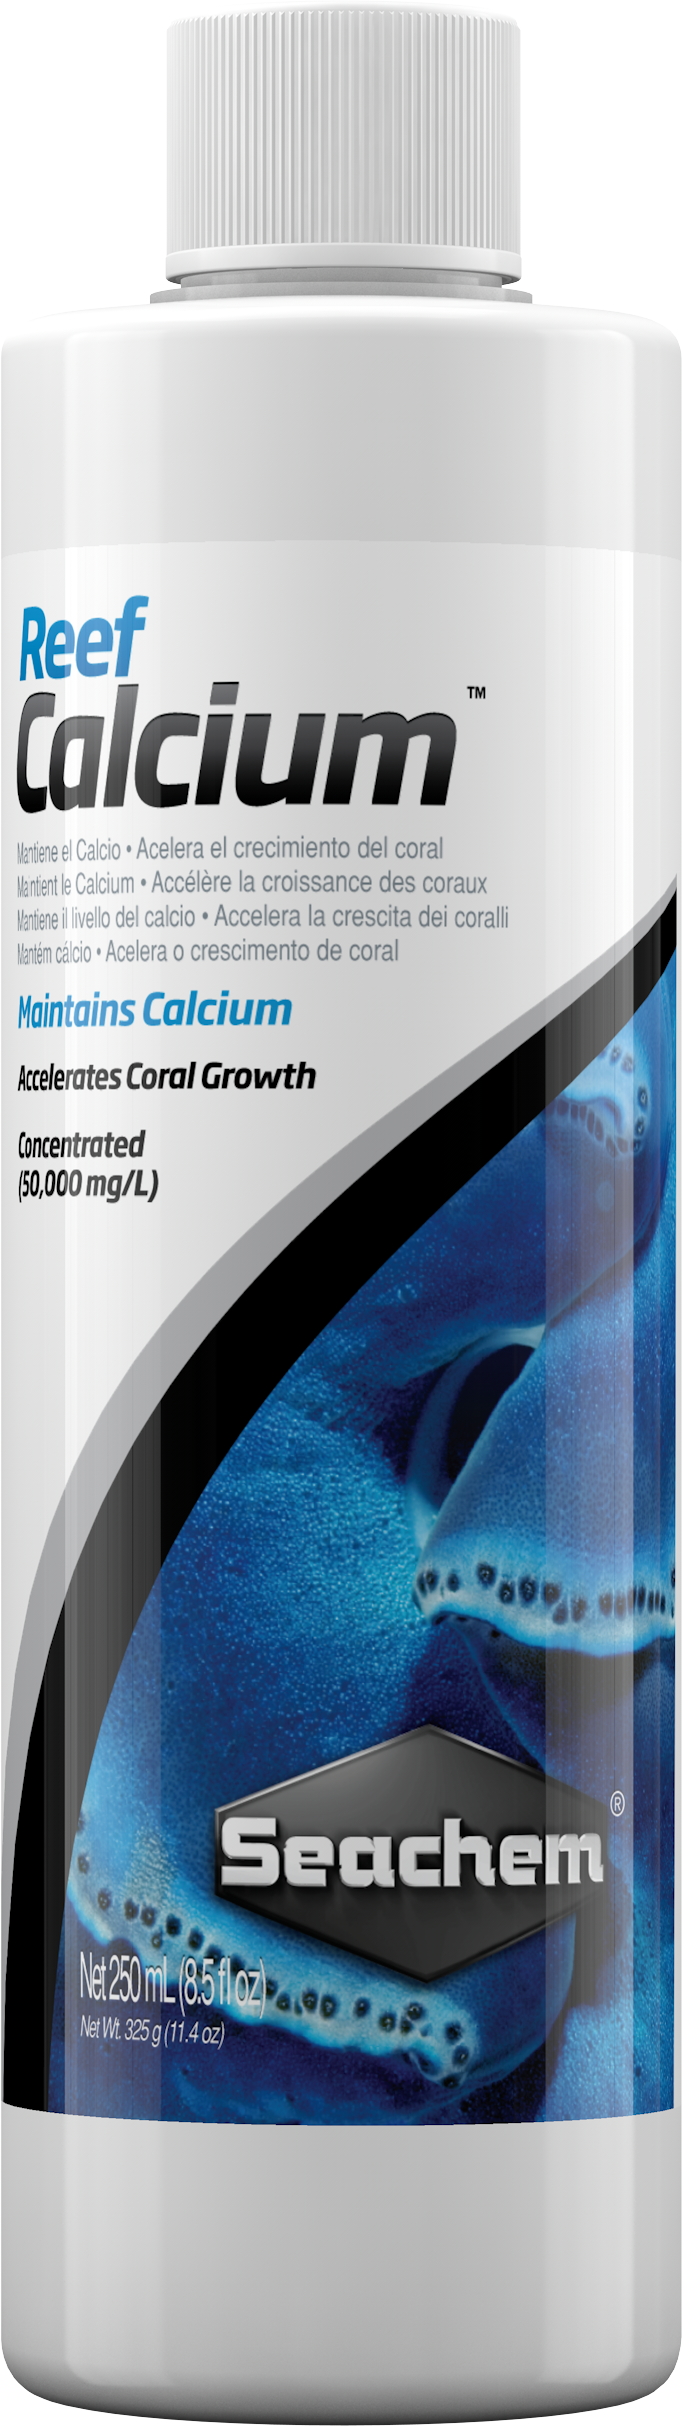 SEACHEM Reef Calcium 250ml maintient le Calcium en aquarium sans modifier le pH